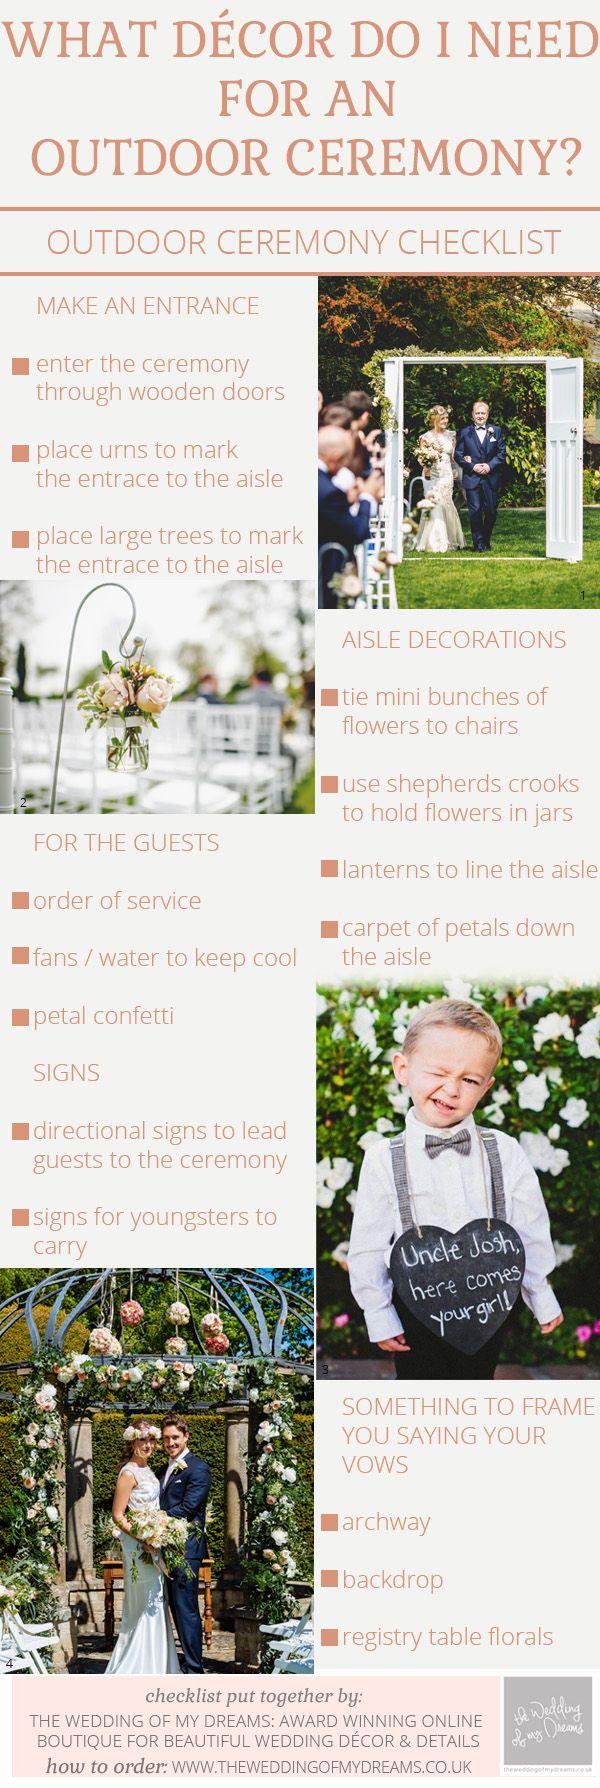 Wedding - Outdoor Wedding Ceremony Decorations – Checklist